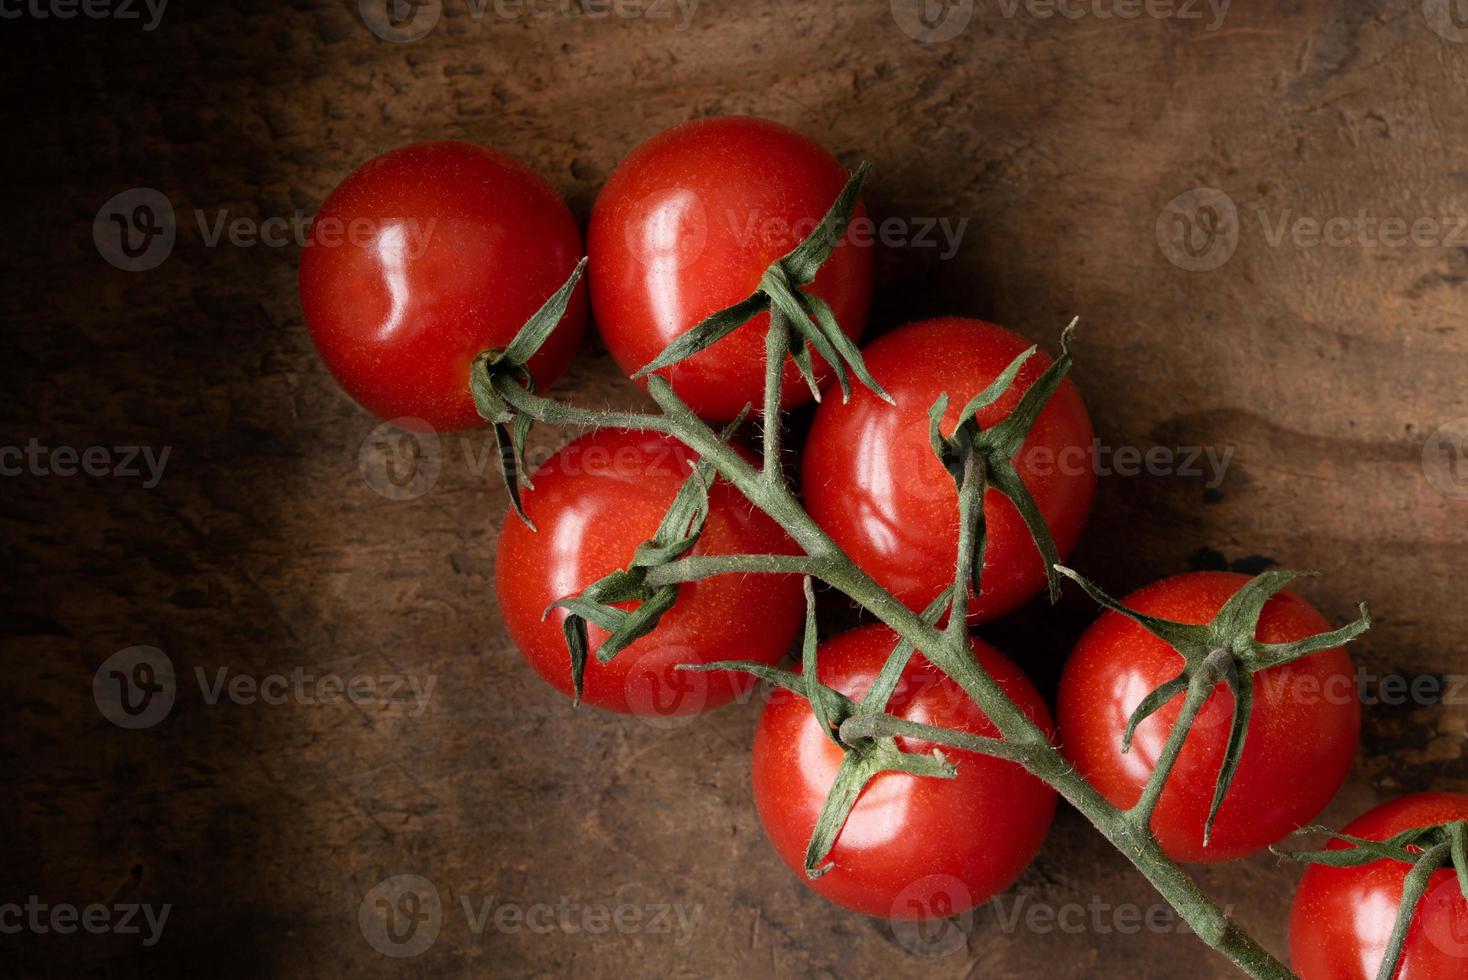 tomate cereja em uma videira foto